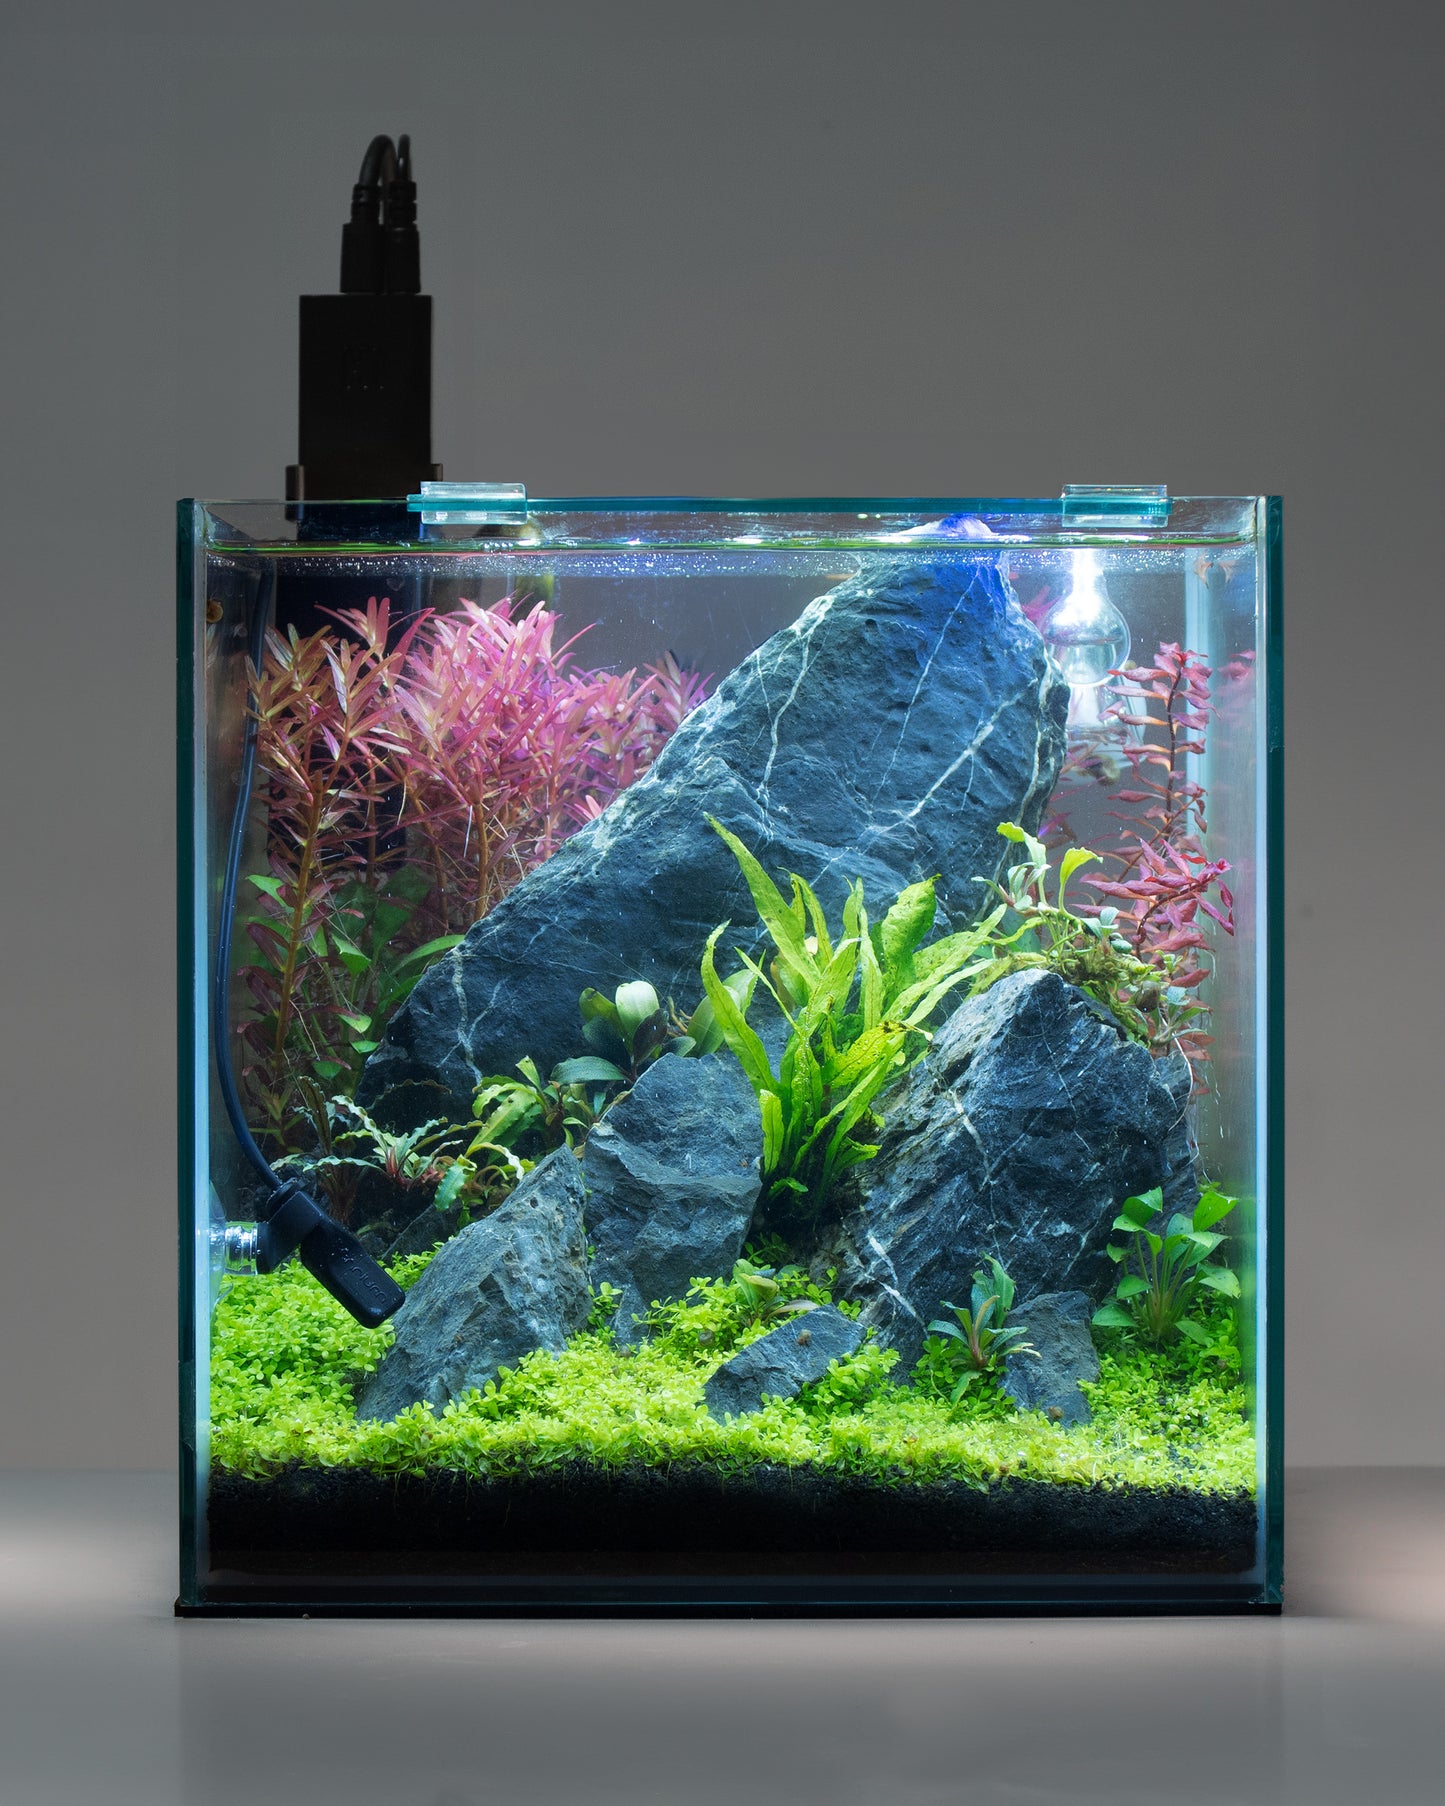 H1 Aquarium Monitor